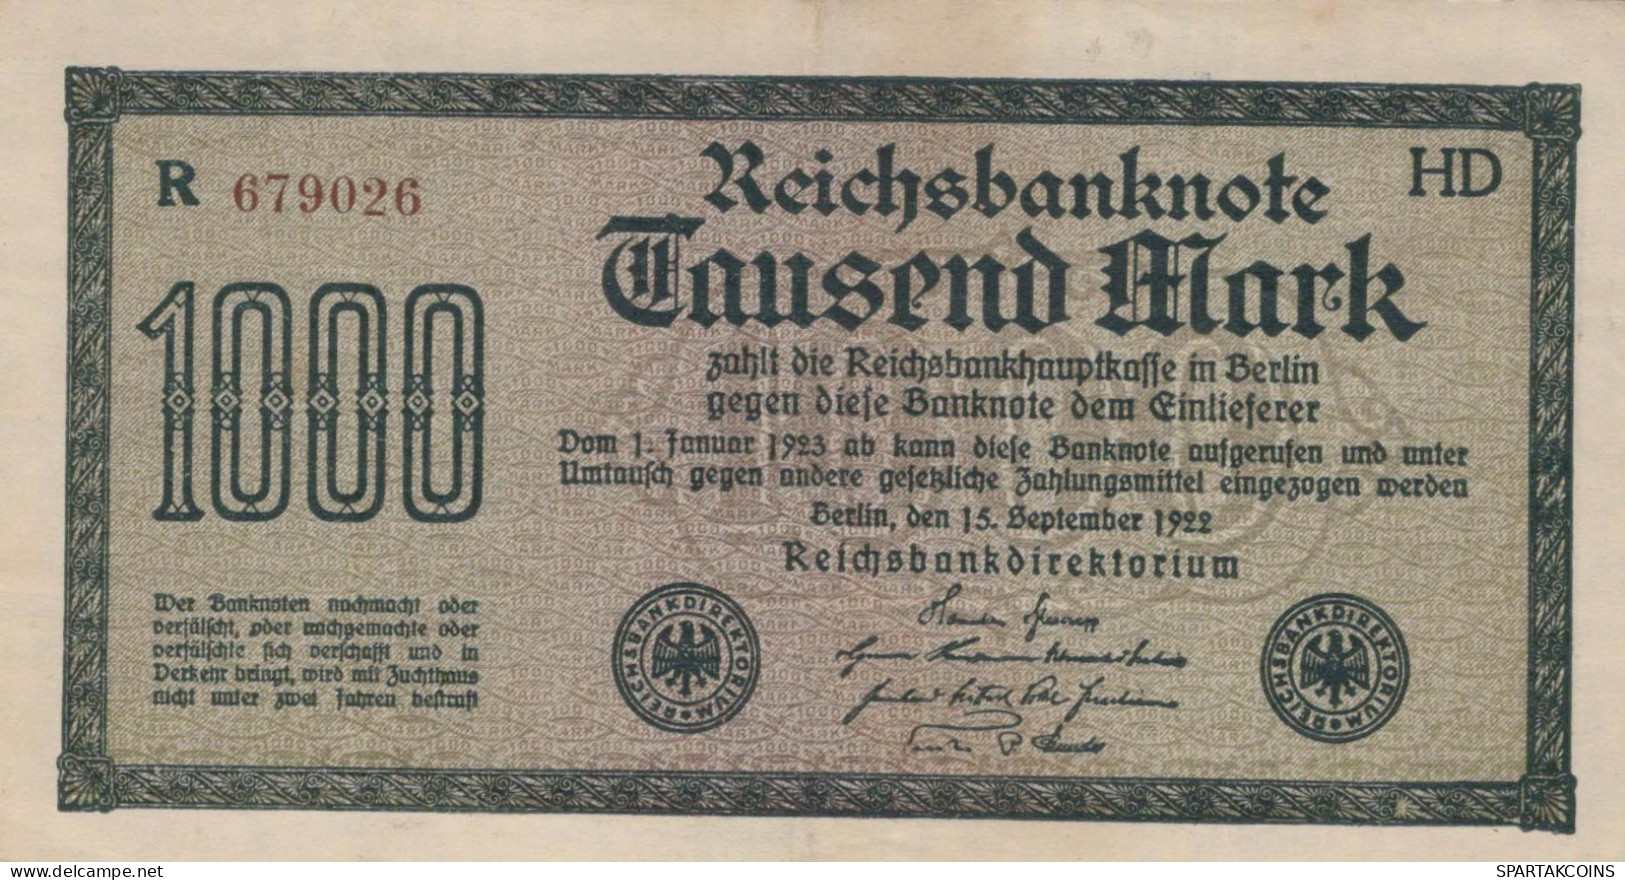 1000 MARK 1922 Stadt BERLIN DEUTSCHLAND Papiergeld Banknote #PL383 - [11] Local Banknote Issues